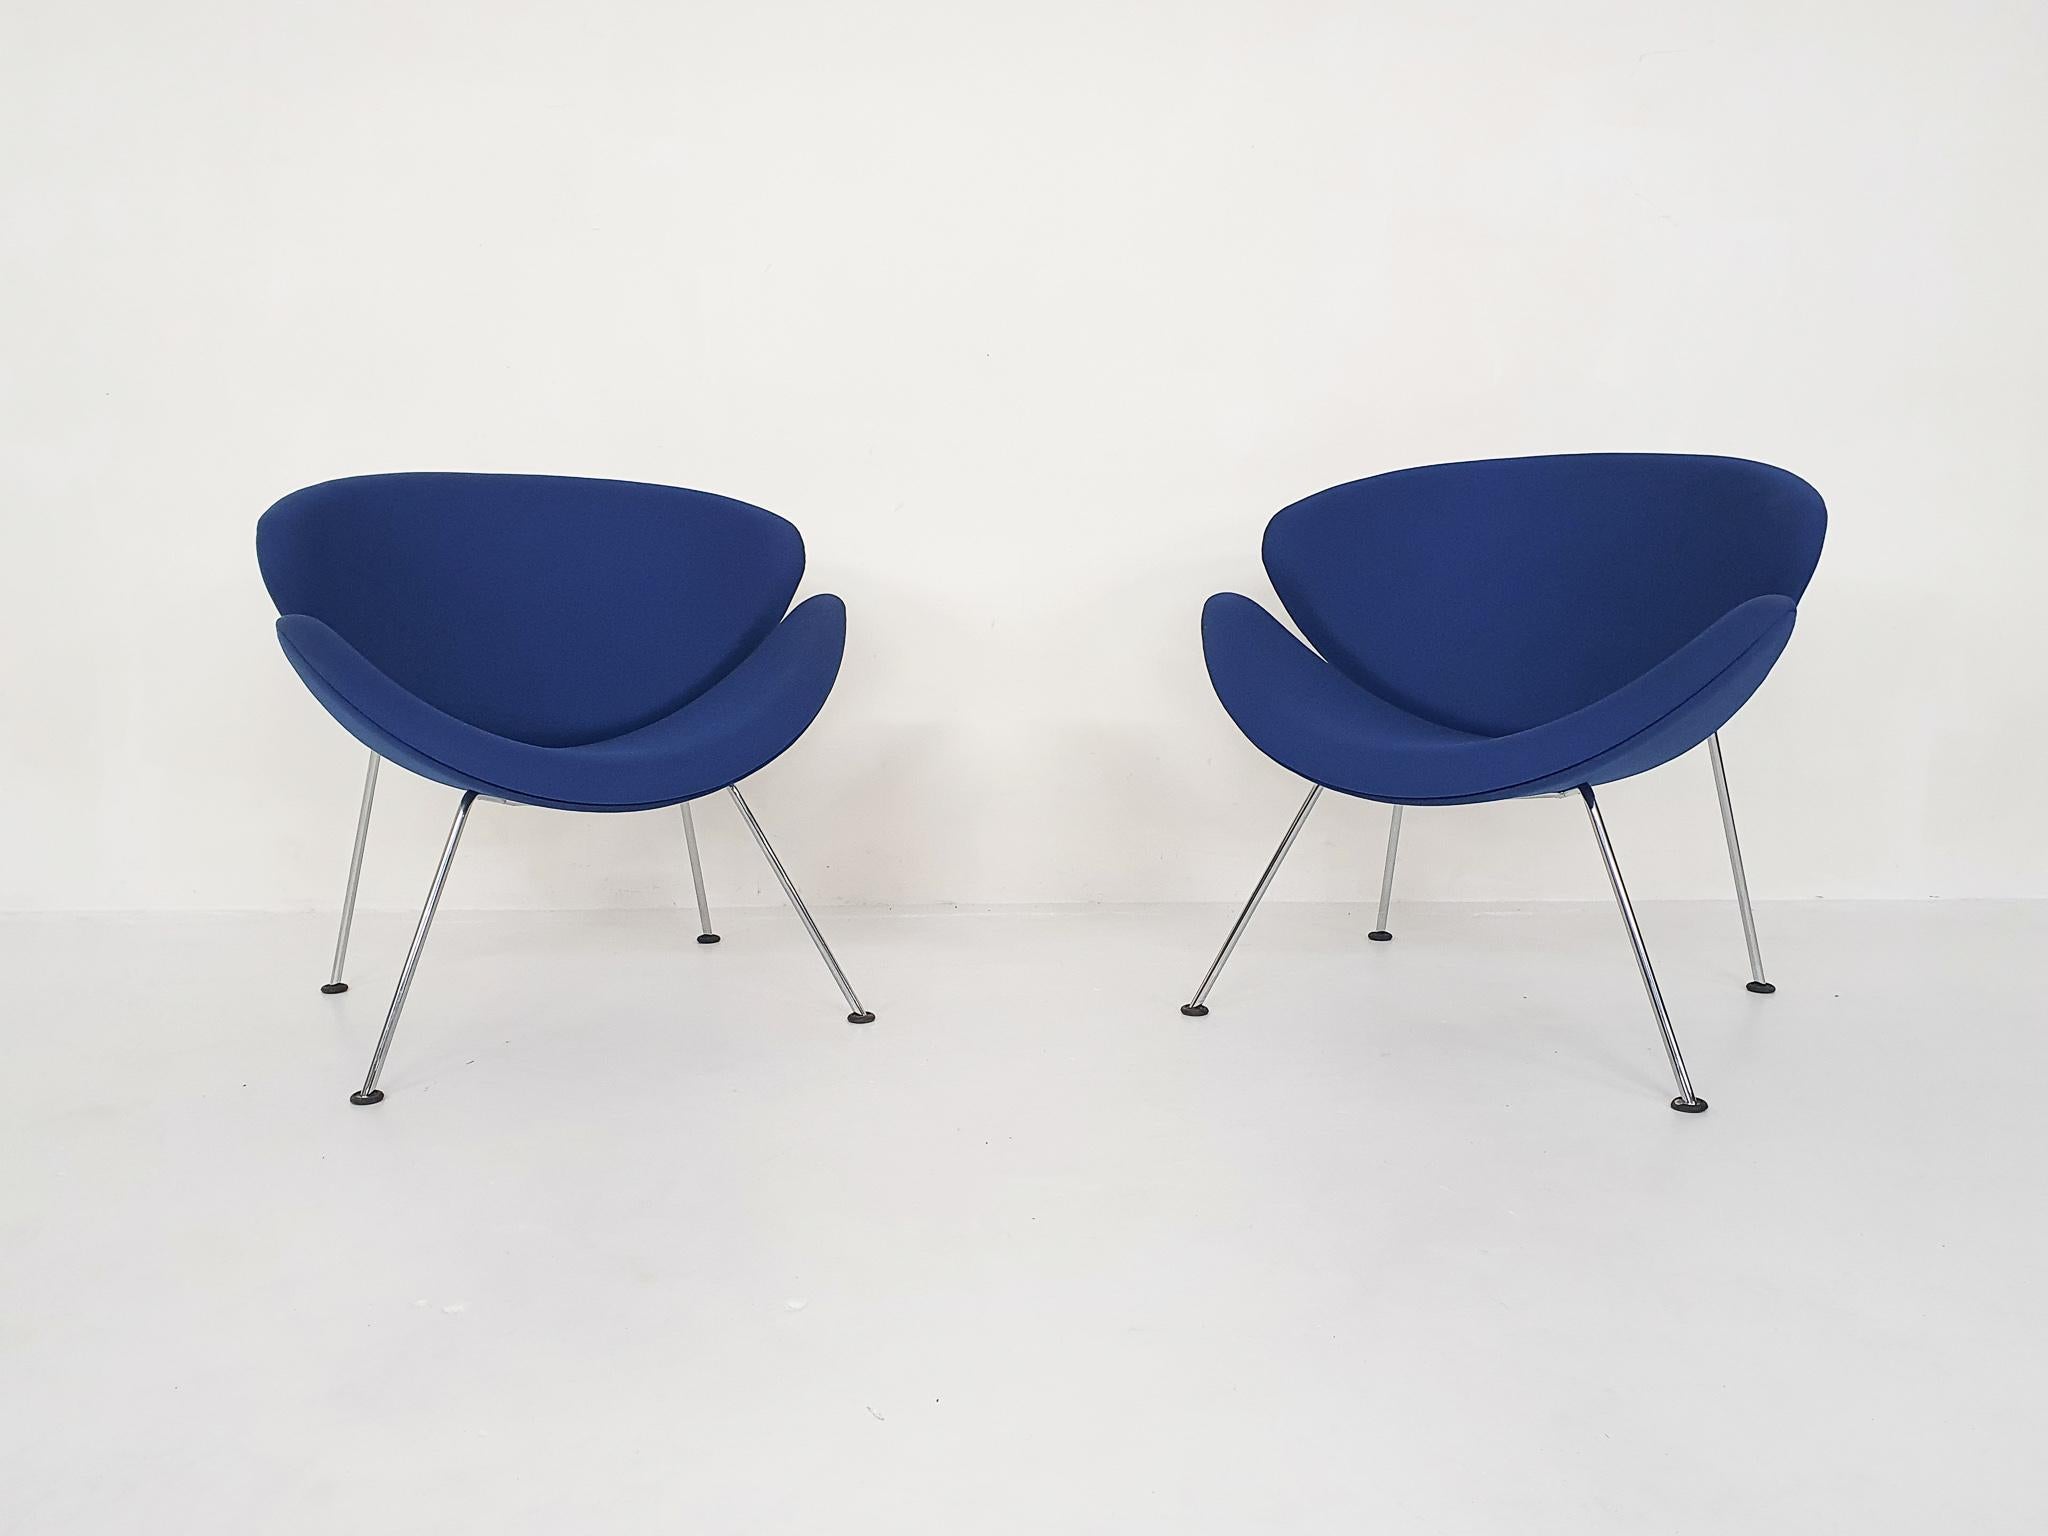 Chaises longues en tissu bleu d'origine. Une petite tache sur une chaise. 
L'Orange Slice a été conçu en 1960:: et ils sont toujours en production. Ce sont les modèles les plus récents:: qui sont un peu plus hauts:: le modèle F 437 B
Paulin a